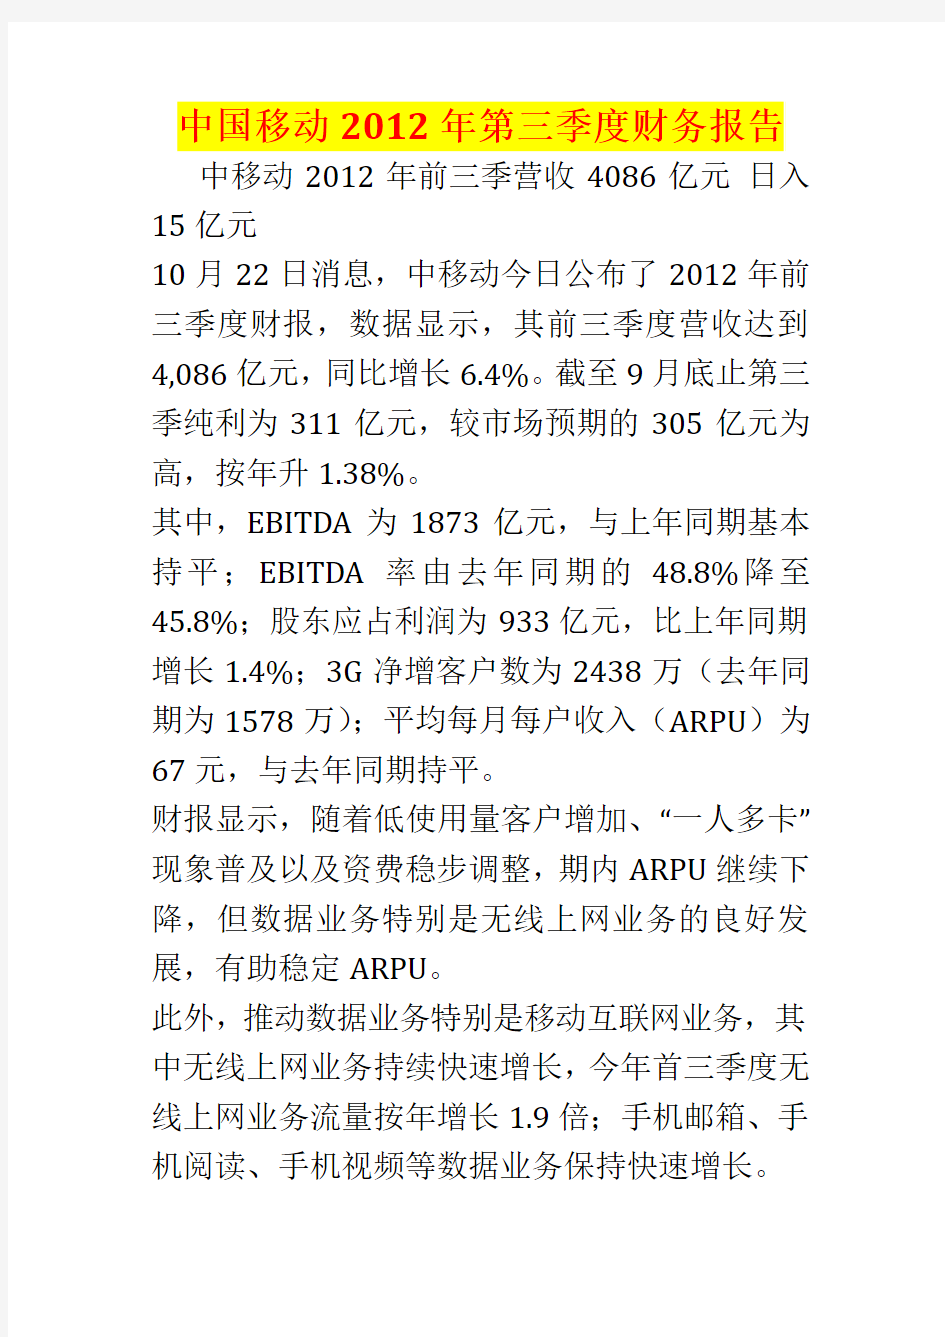 中国移动2012年第三季度财务报告